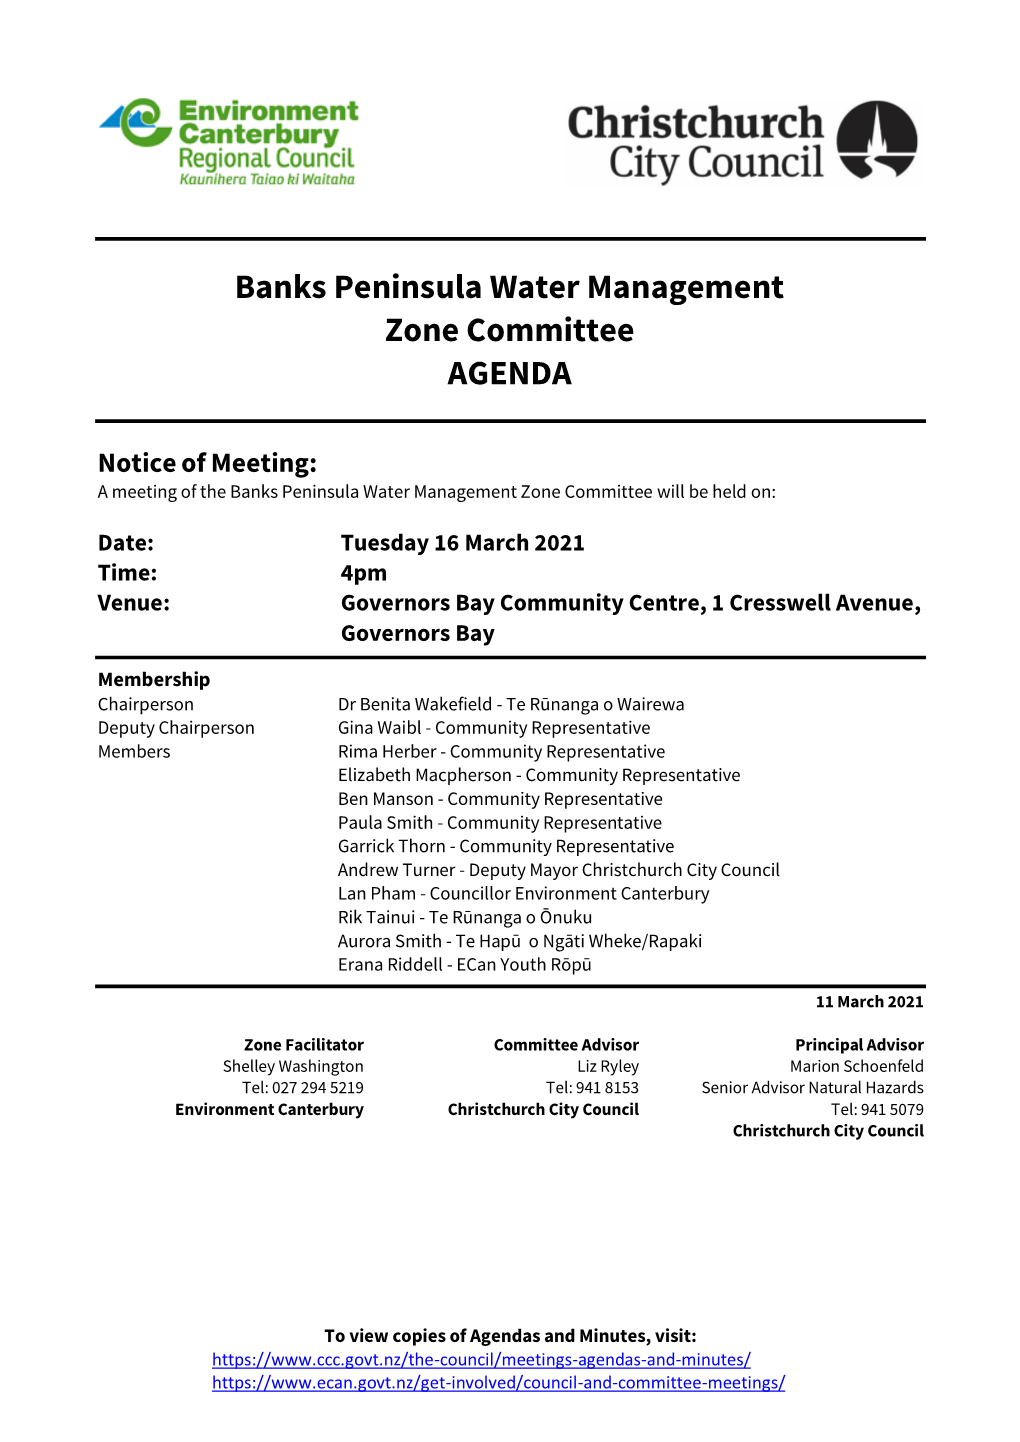 Agenda of Banks Peninsula Water Management Zone Committee